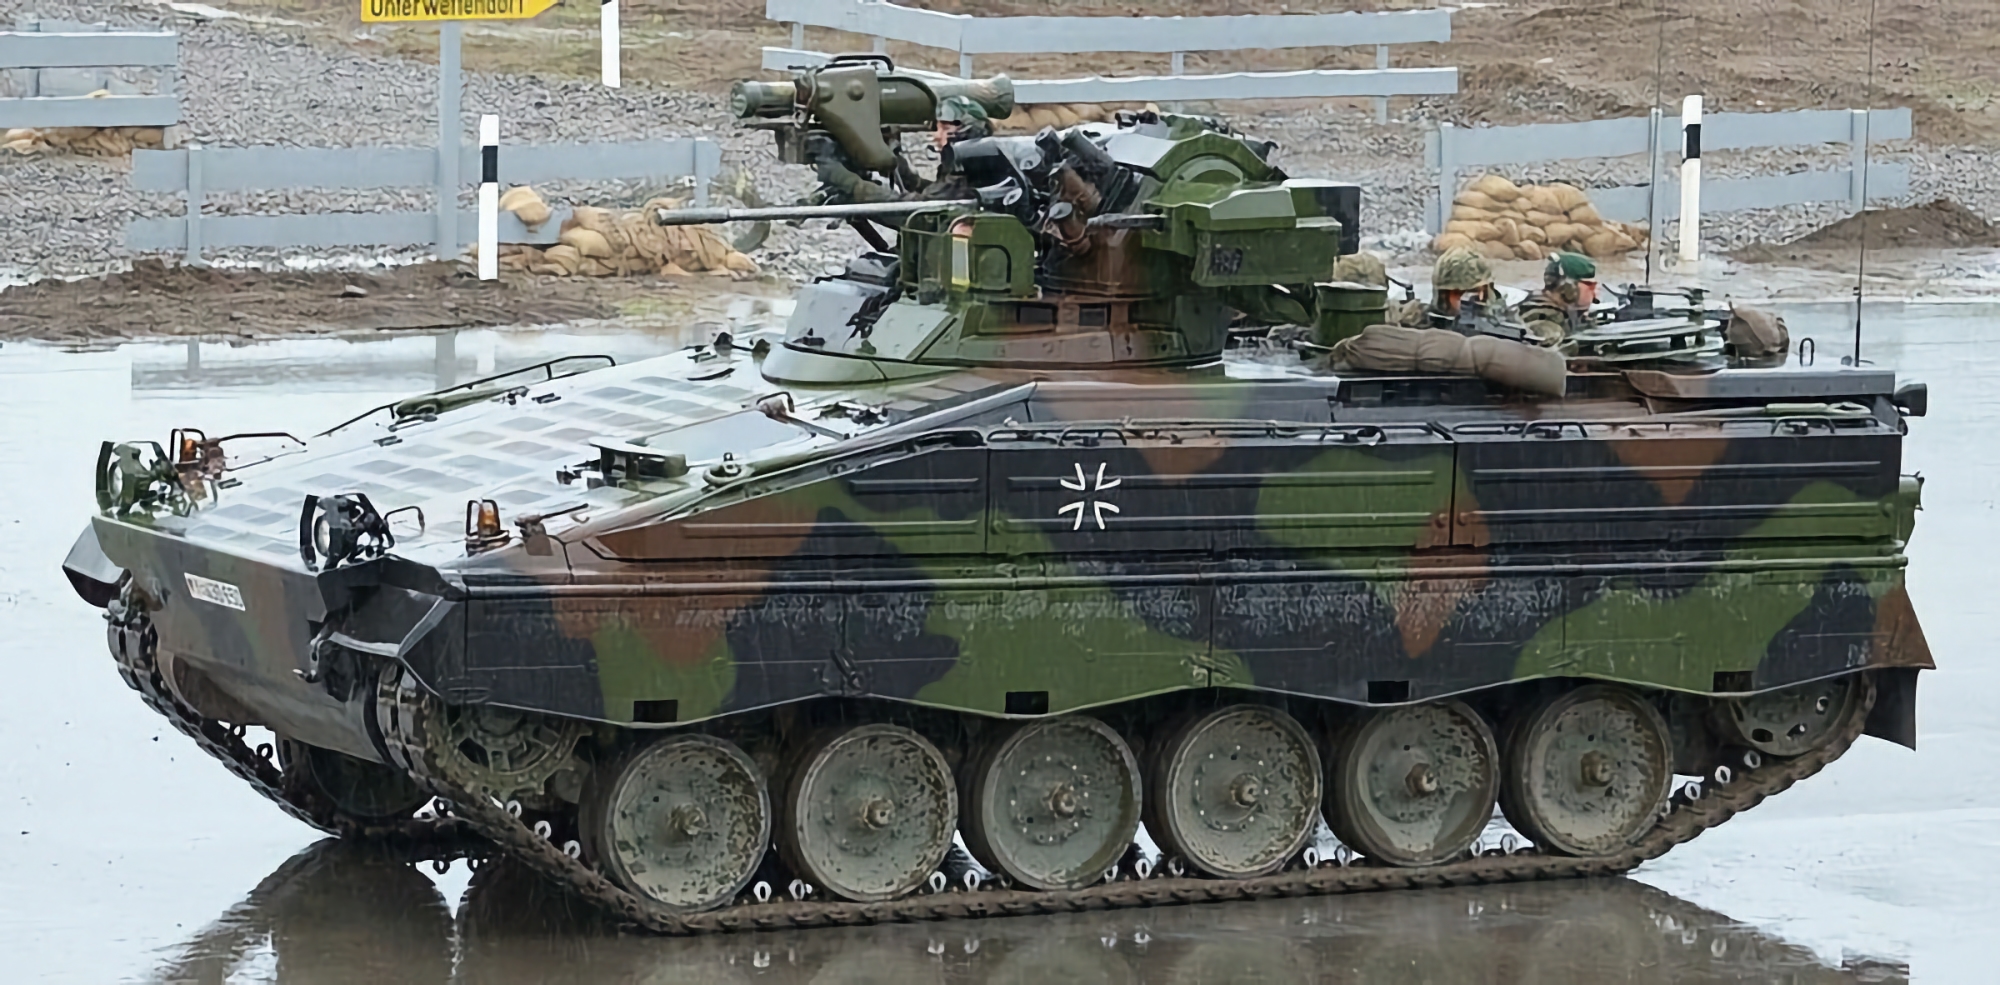 Niemcy zamówiły dodatkową partię bojowych wozów piechoty Marder 1A3 od Rheinmetall dla ukraińskiej armii